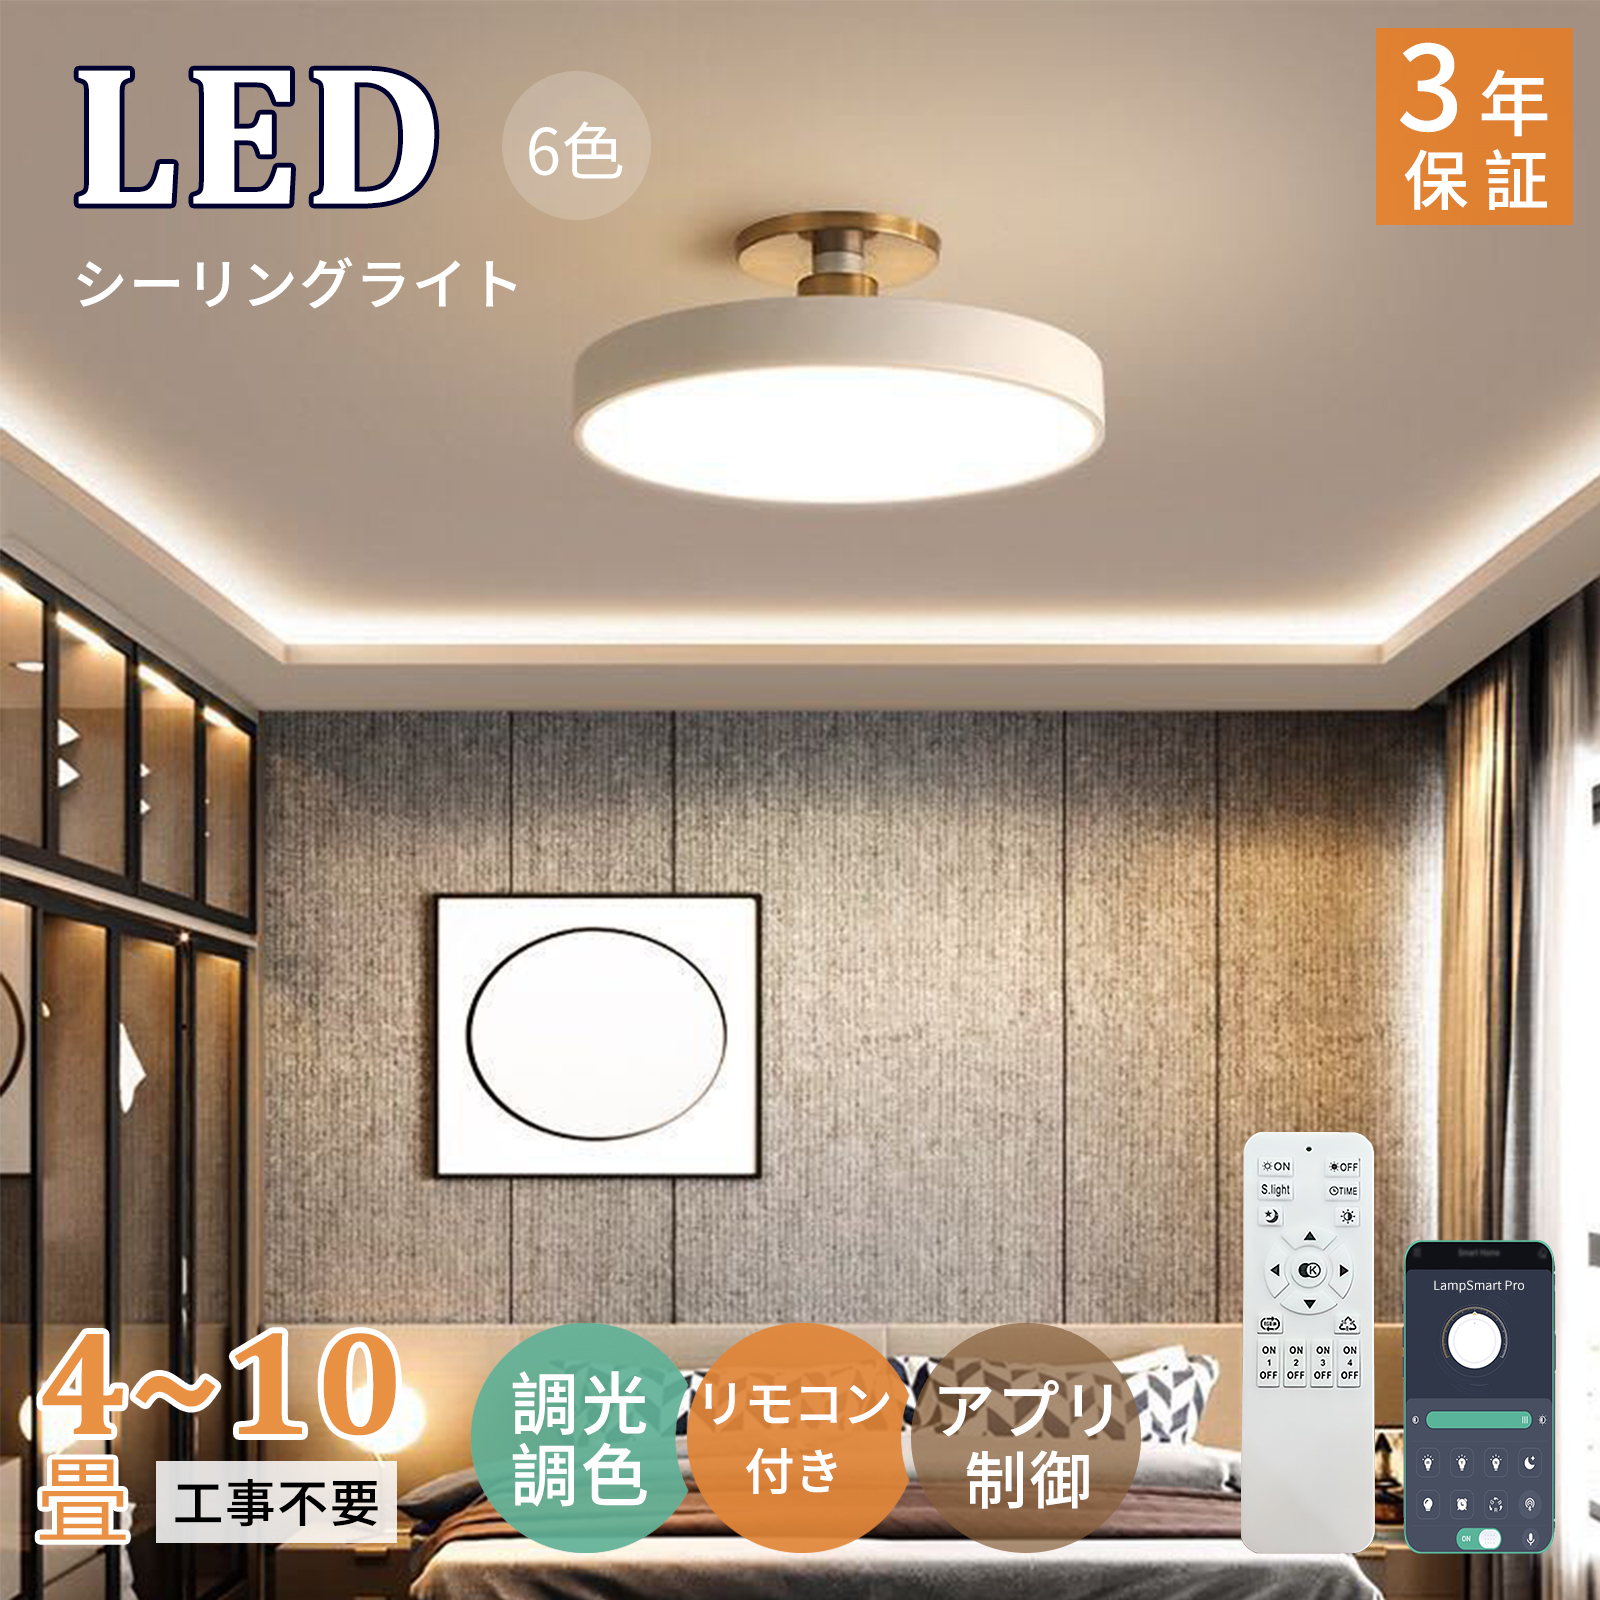 シーリングライト LED 6畳 8畳 10畳 おしゃれ 天井照明 led照明器具 北欧 調光調色 リモコン付き リビング 照明 色変更 アパートライト  取り付け簡単 :ir-zmdd443:イルカストア 通販 